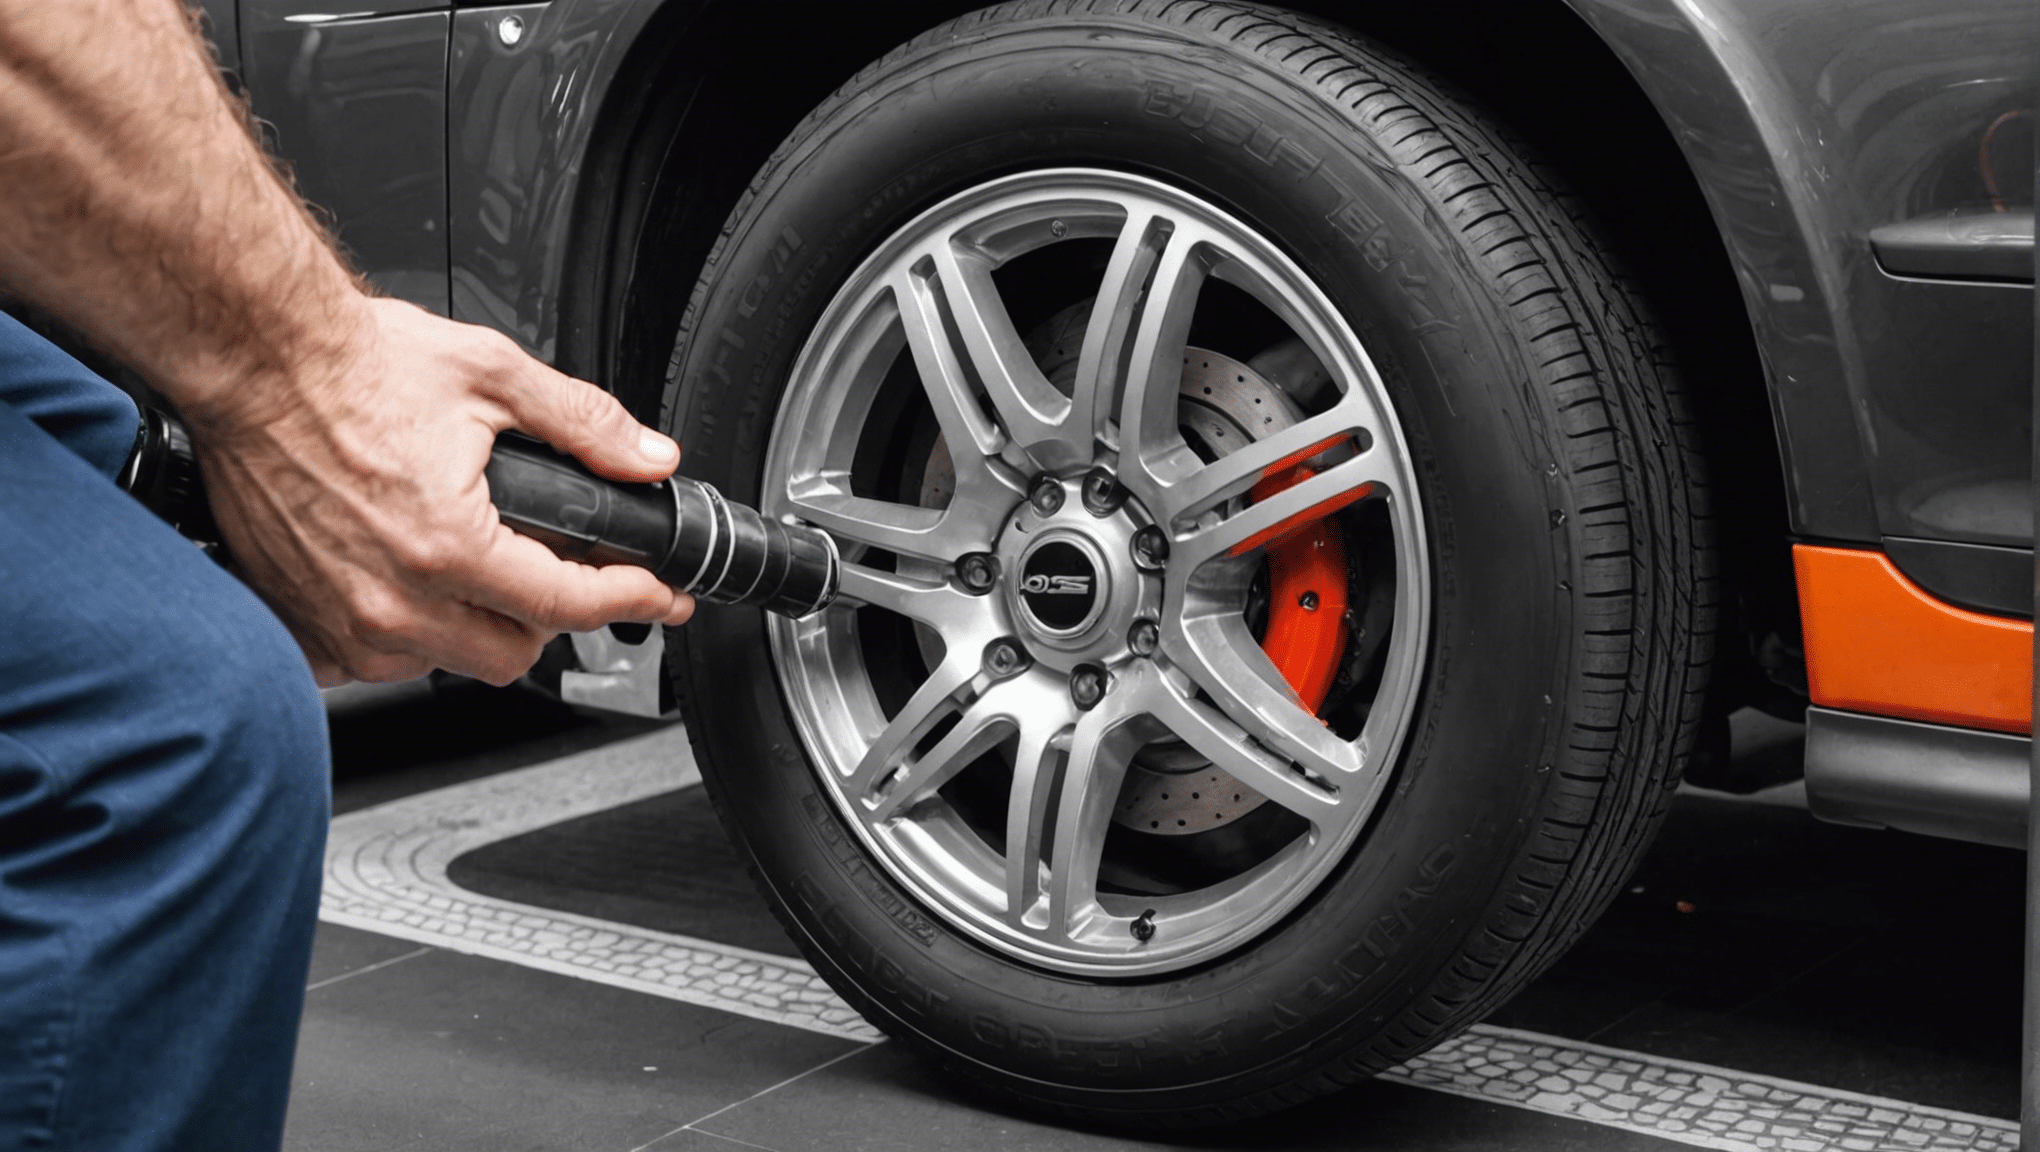 découvrez les dernières tendances en pneumatiques automobiles et restez informé sur l'évolution du marché des pneus pour votre véhicule.